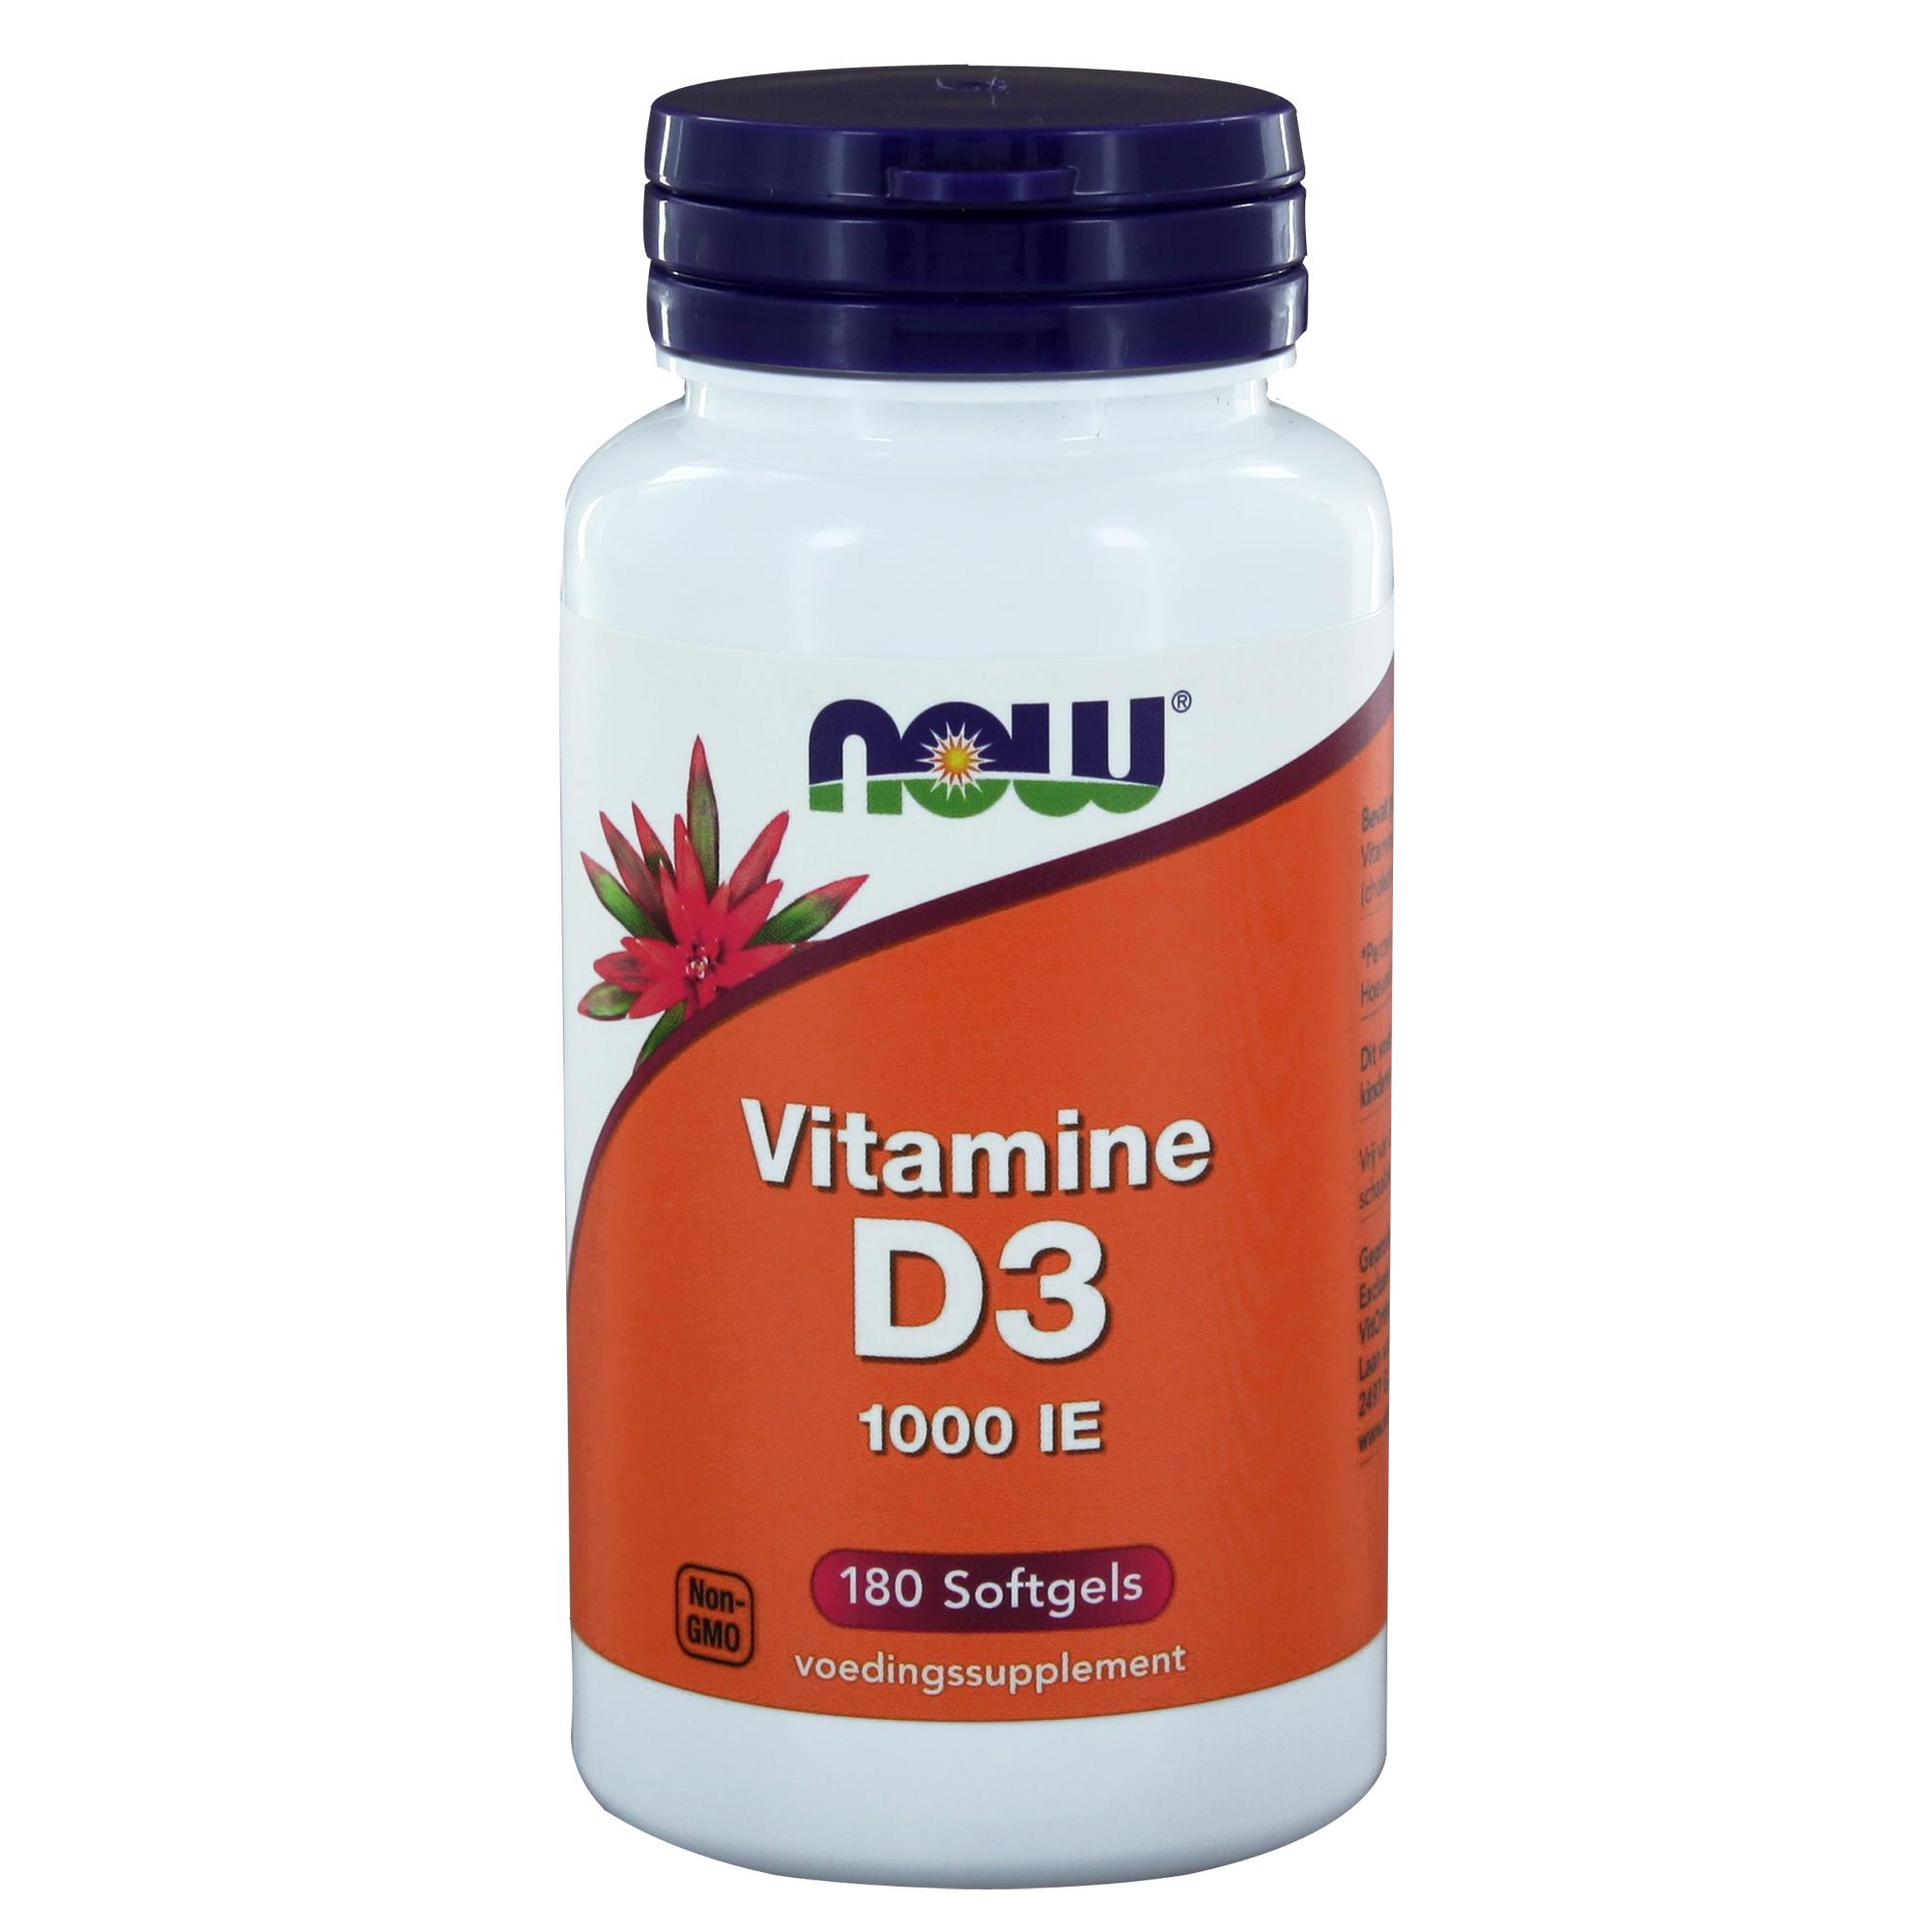 Vitamine D3 1000 iu - 180 softgels